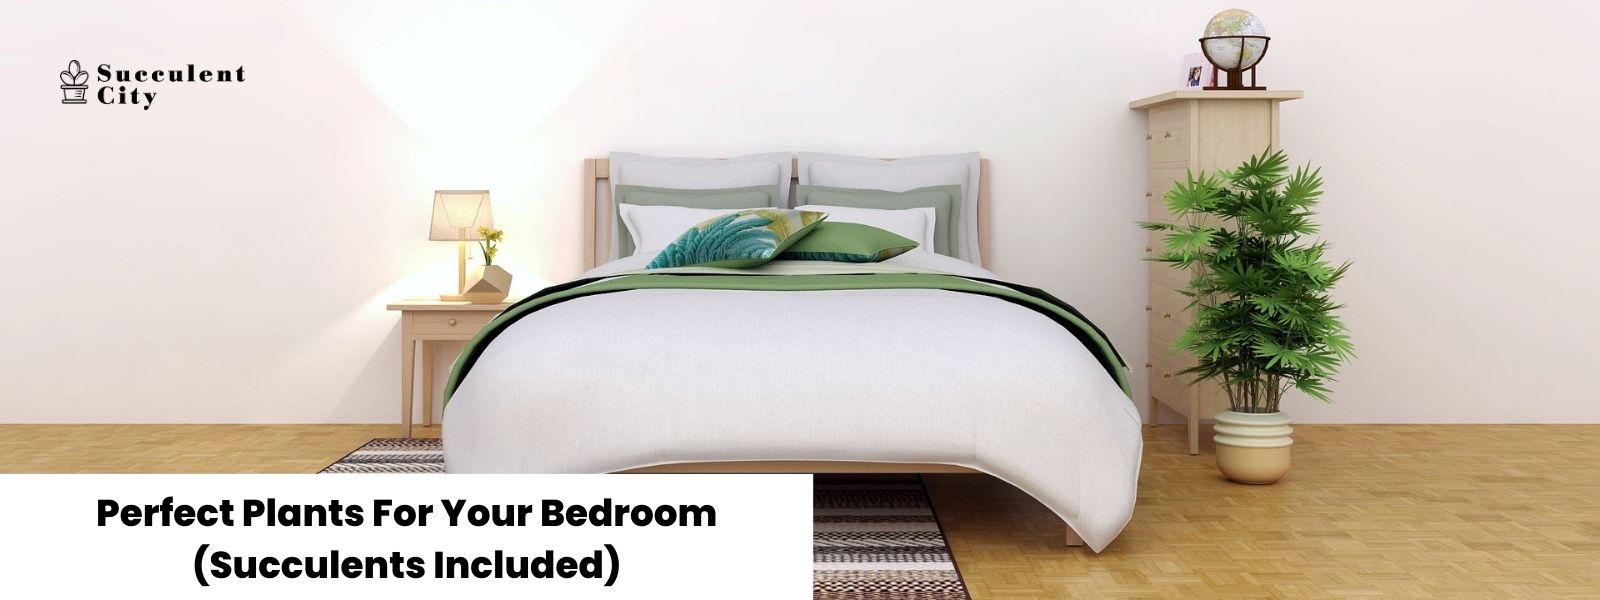 5 suculentas perfectas para el dormitorio (y algunas sugerencias no suculentas incluidas)